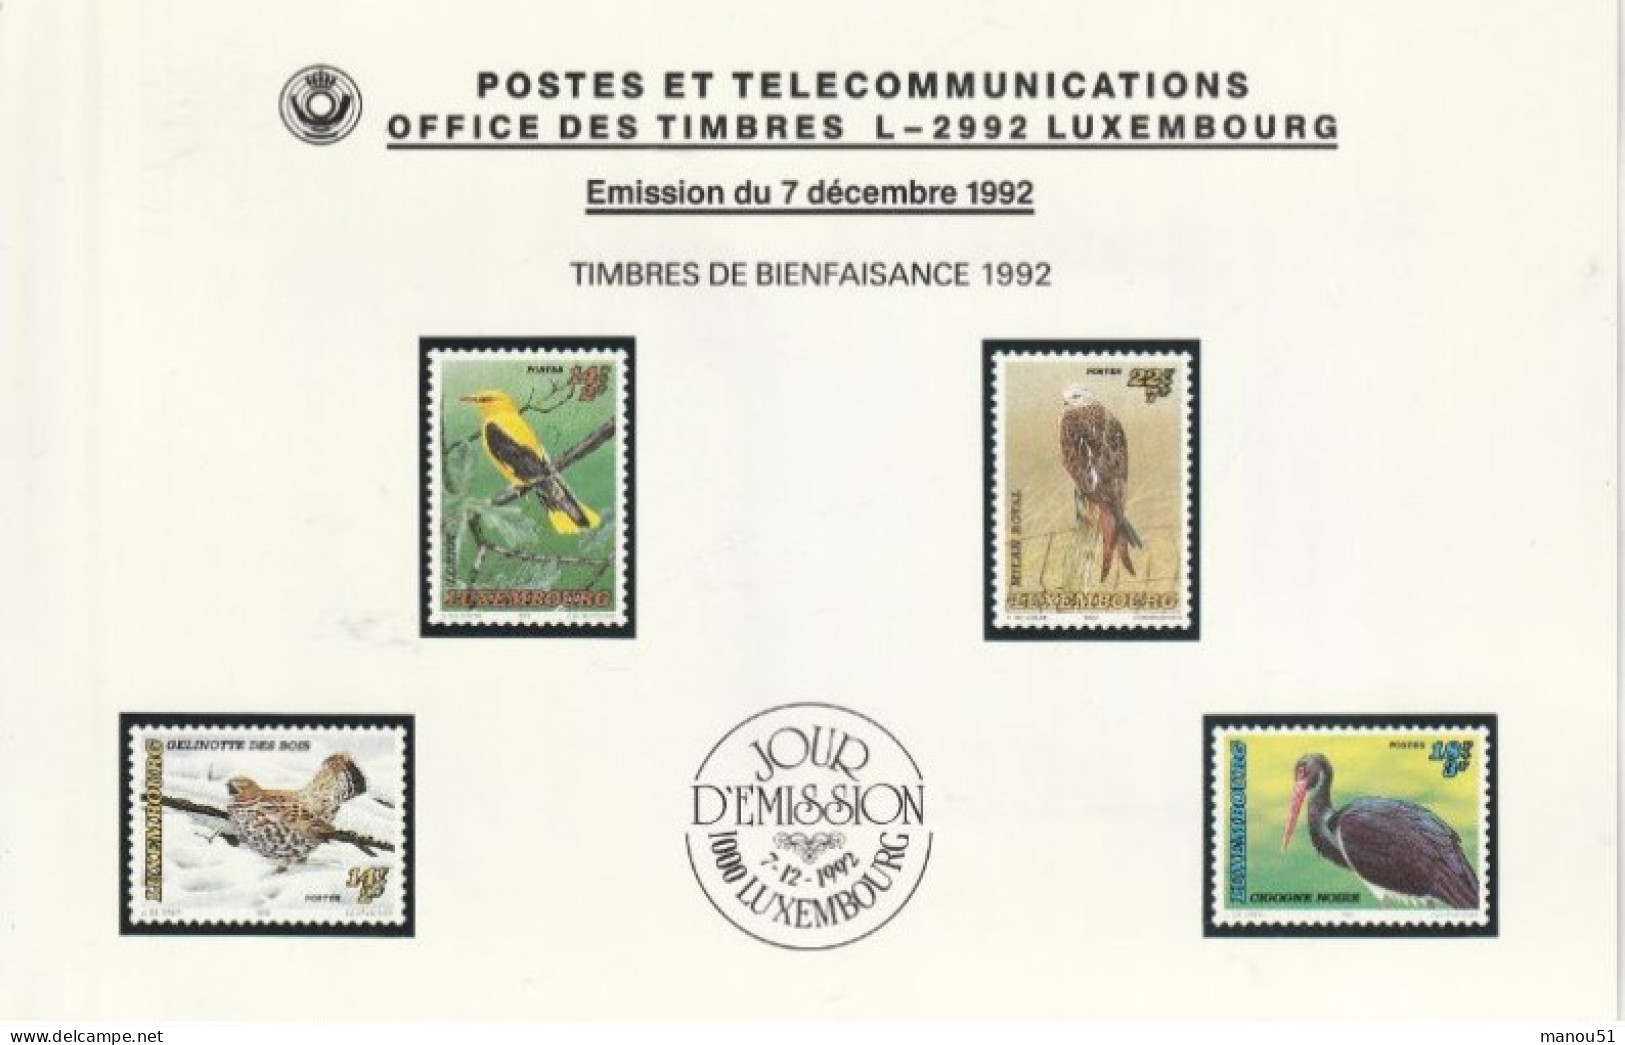 LUXEMBOURG - Timbres De Bienfaisance - Oiseaux Menacés - Emission Du 7.12.1992 - Lot 4 Timbres + 1 Enveloppe 1er Jour - Unused Stamps